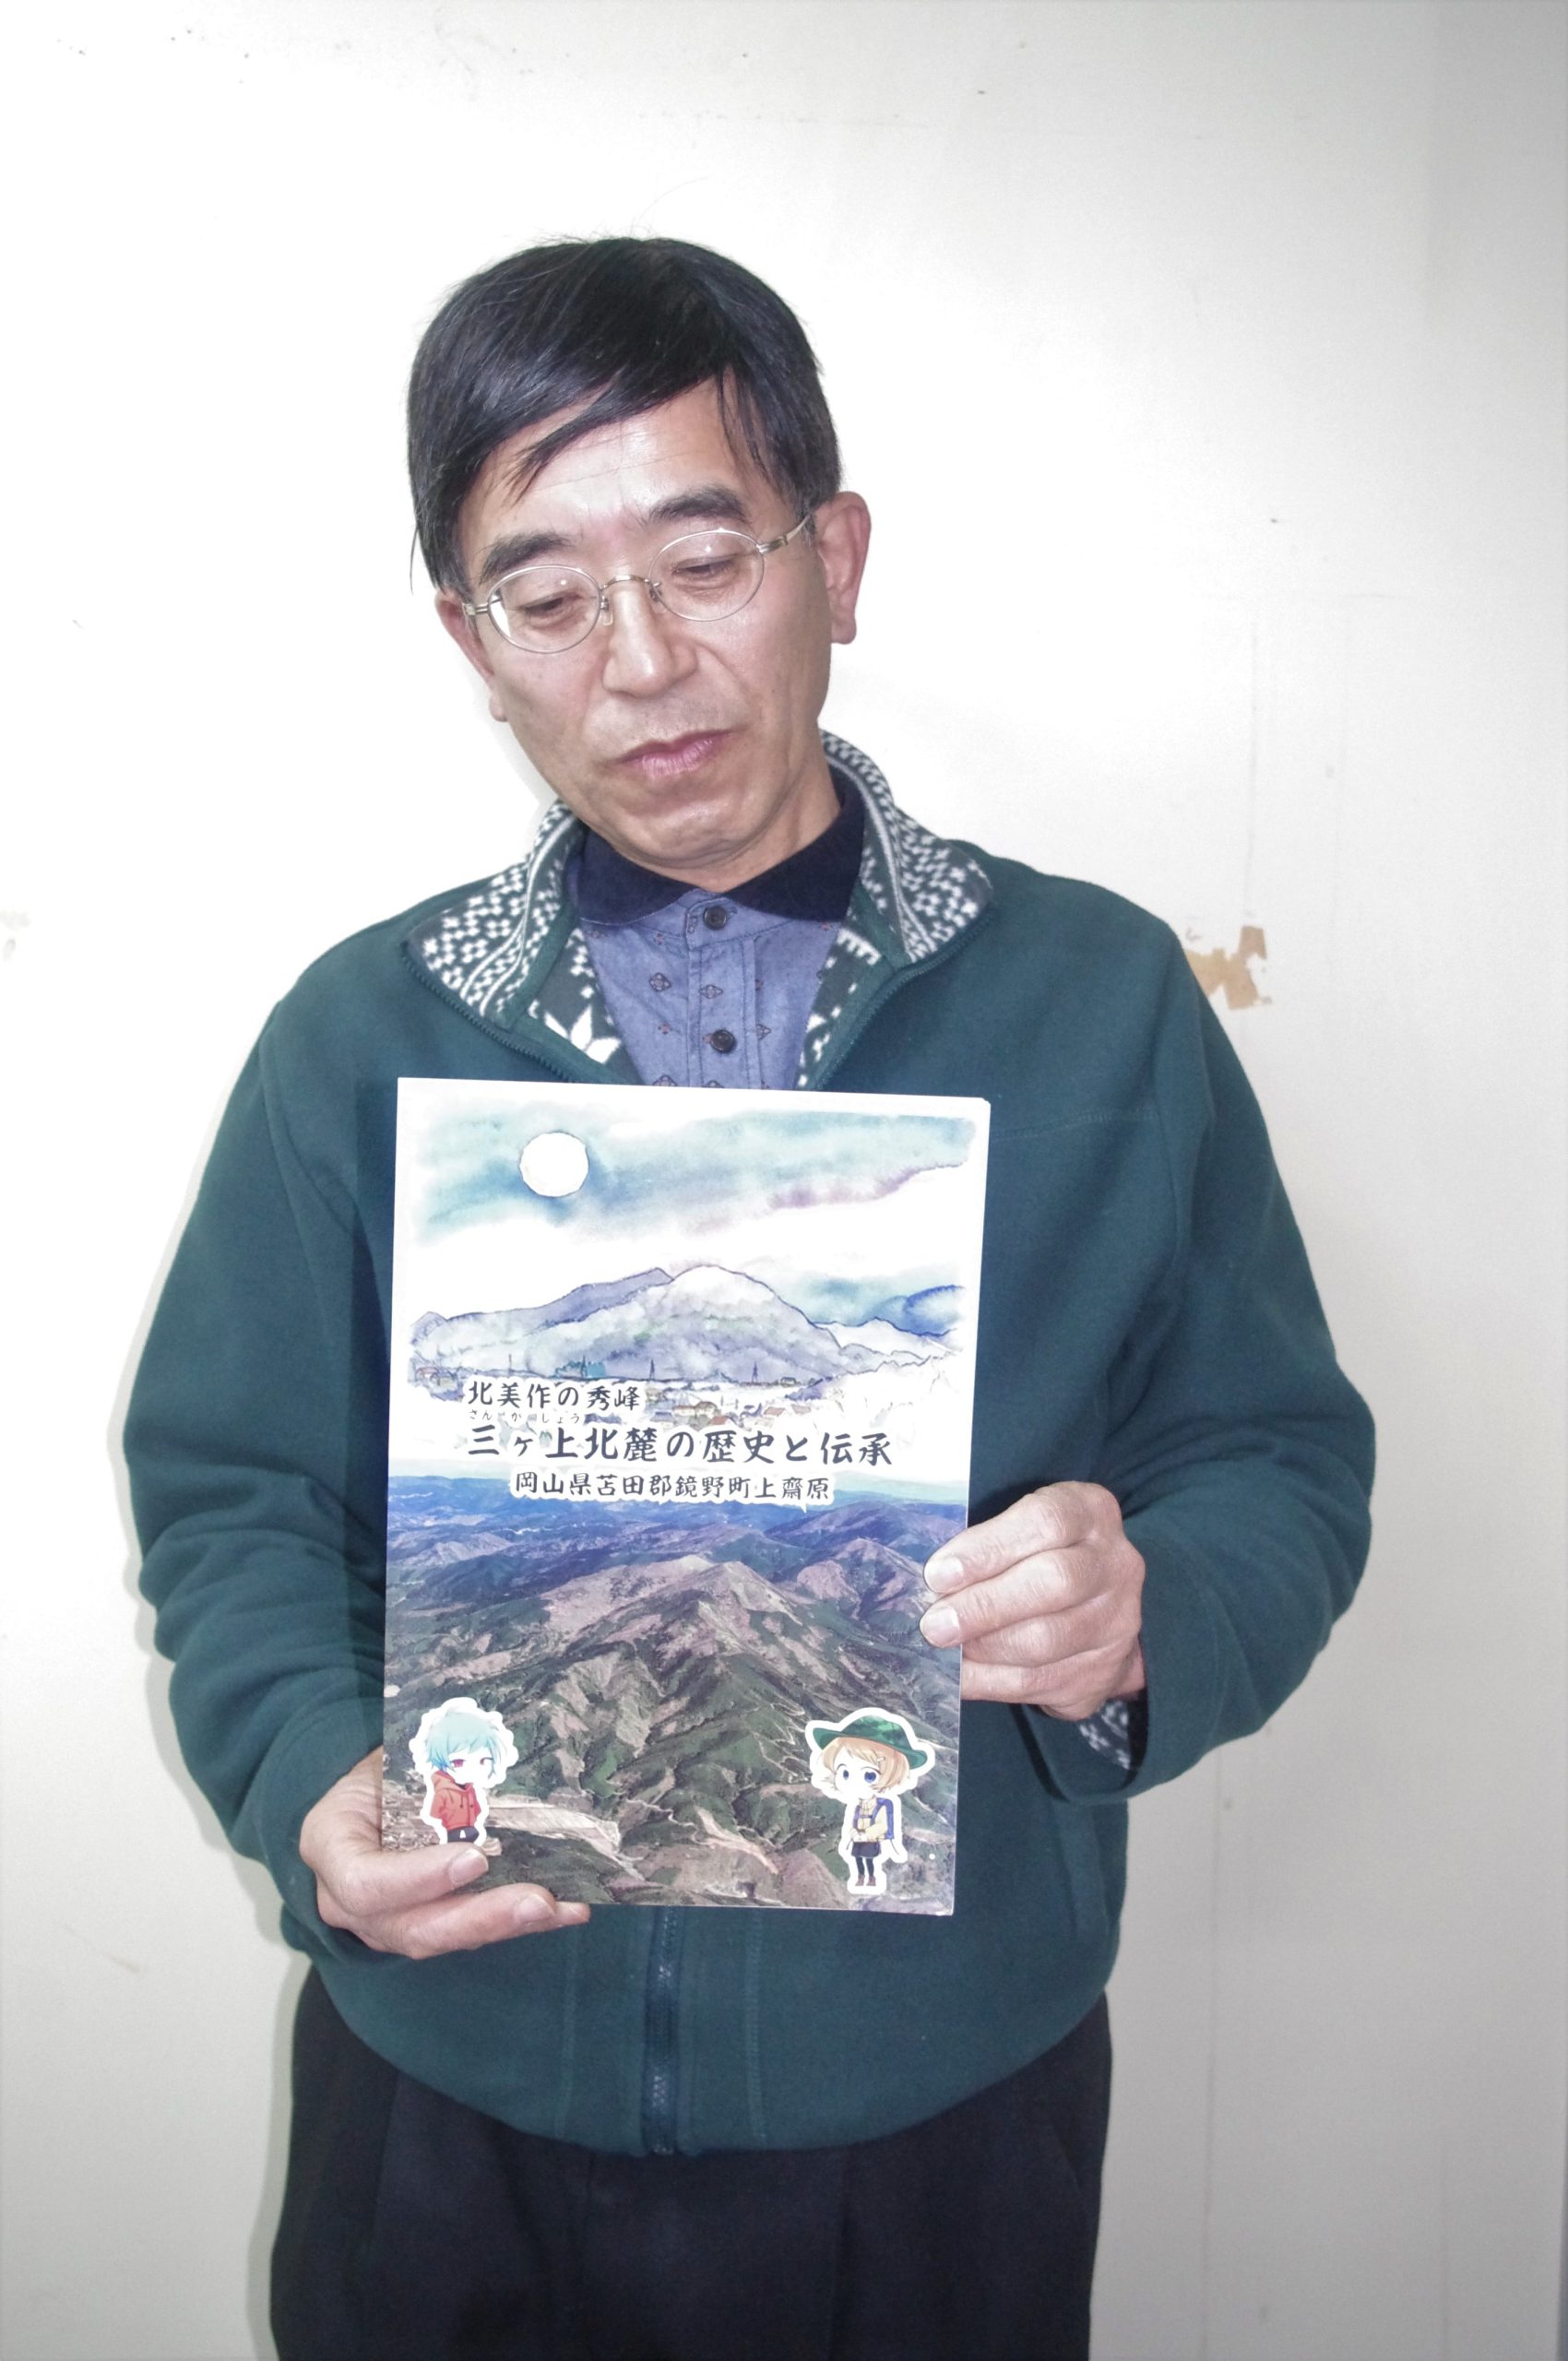 　自費出版した冊子『三ケ上北麓の歴史と伝承』を手にする片田さん